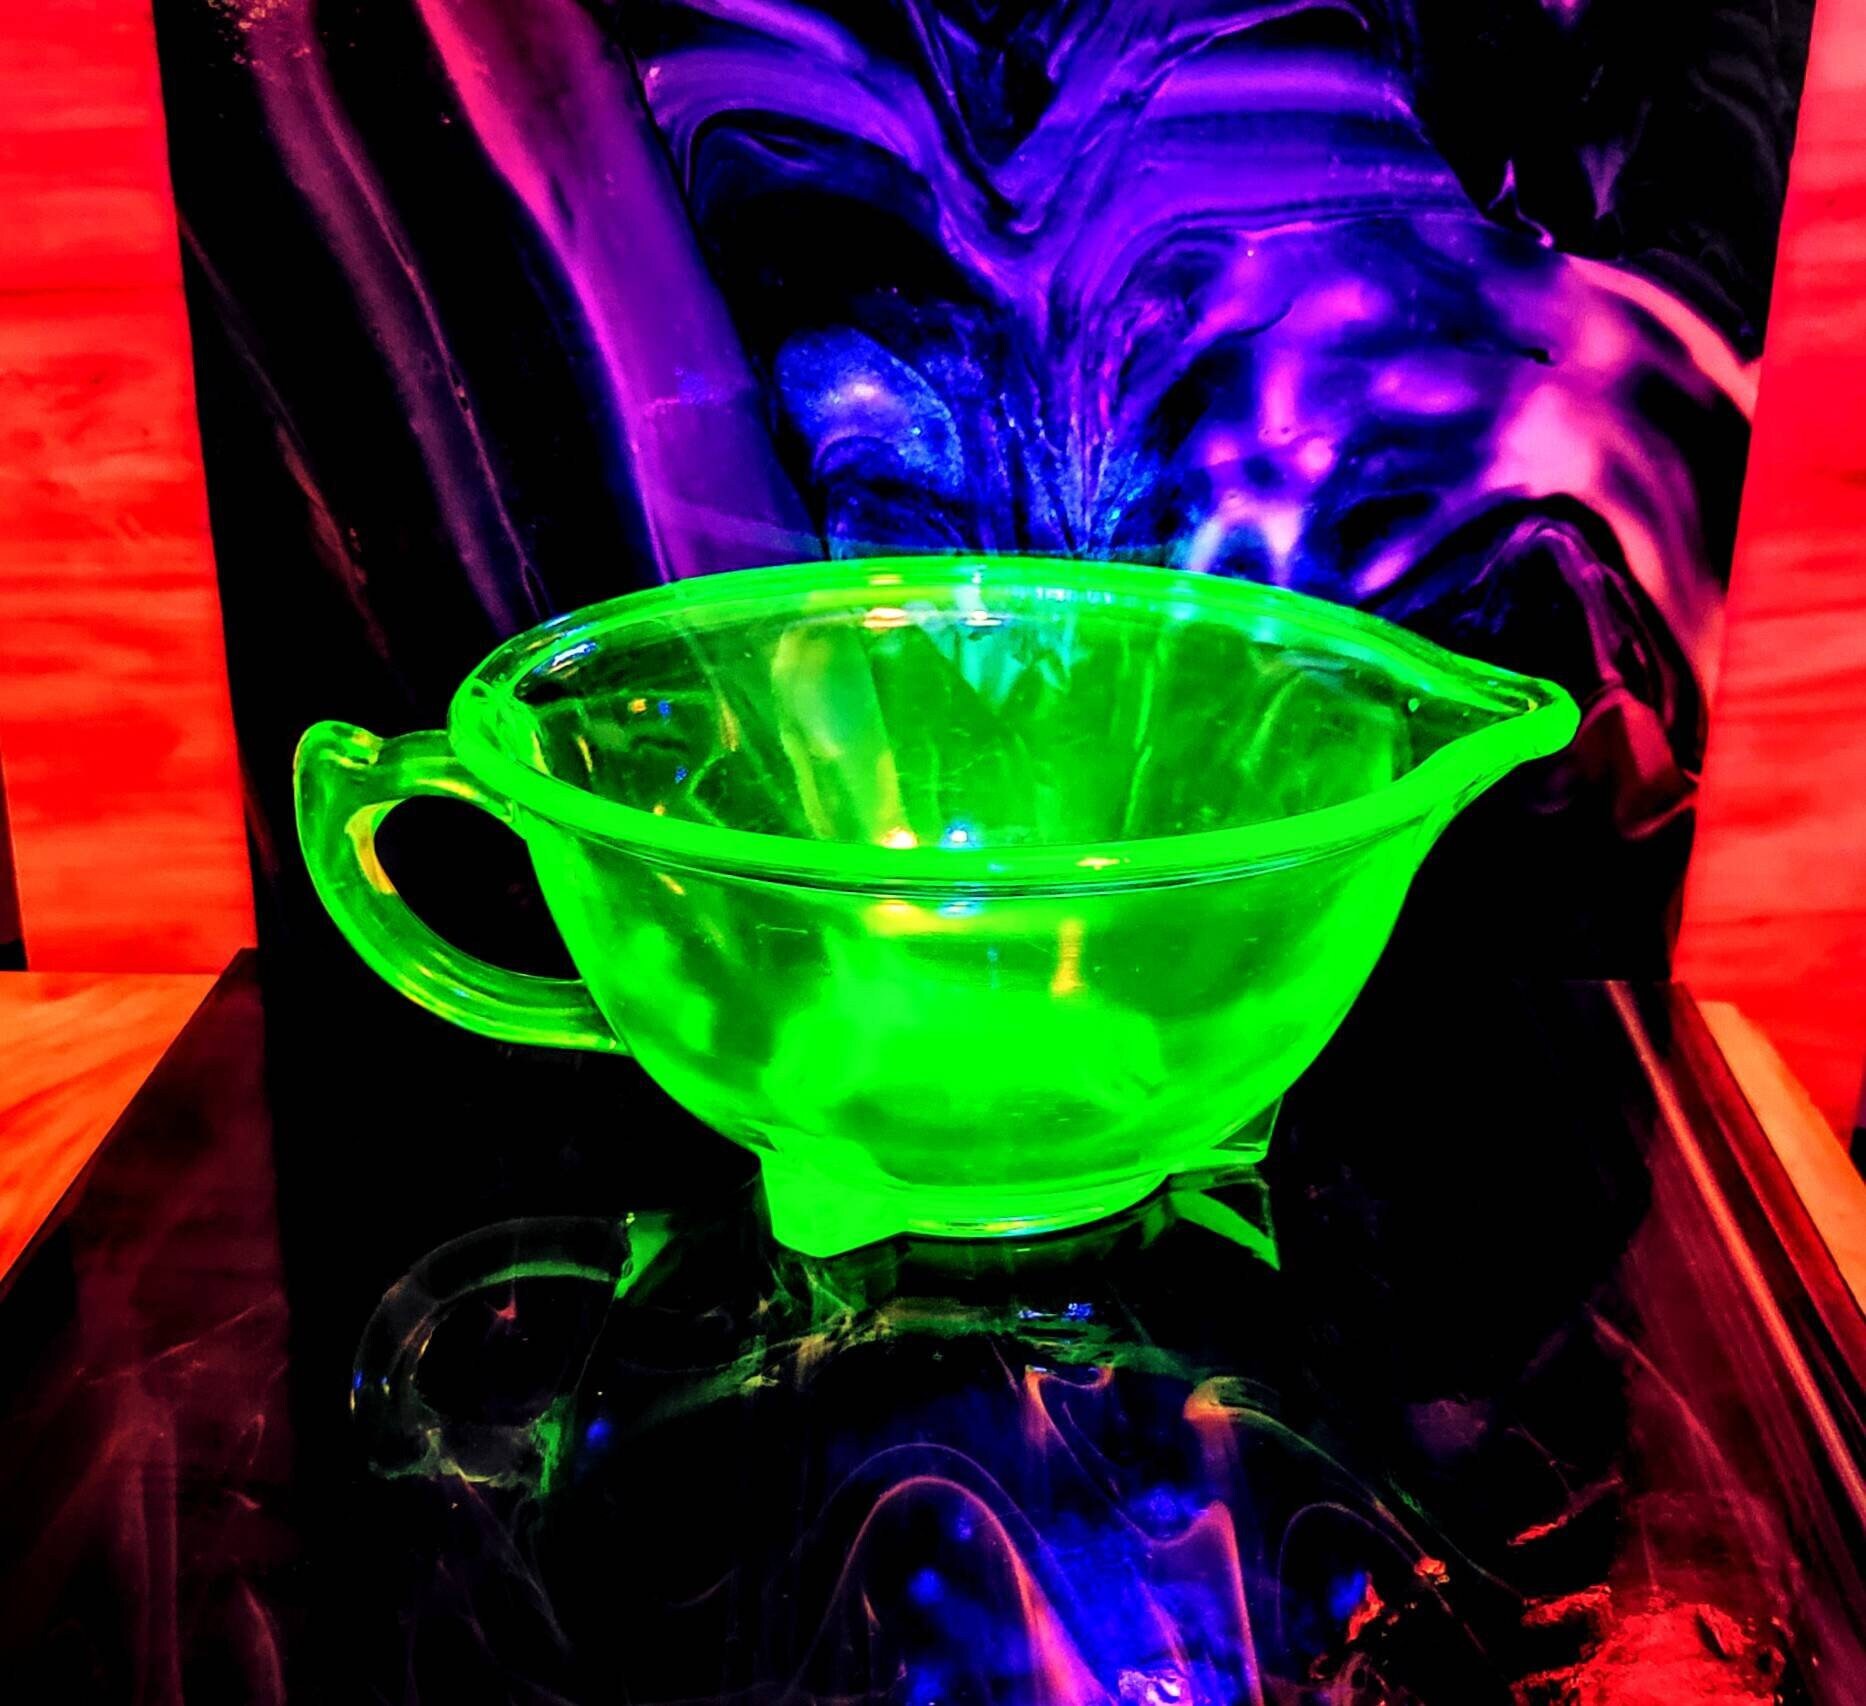 Vintage Uranium Depression Glass Batter Bowl with Pour Spout & Handle